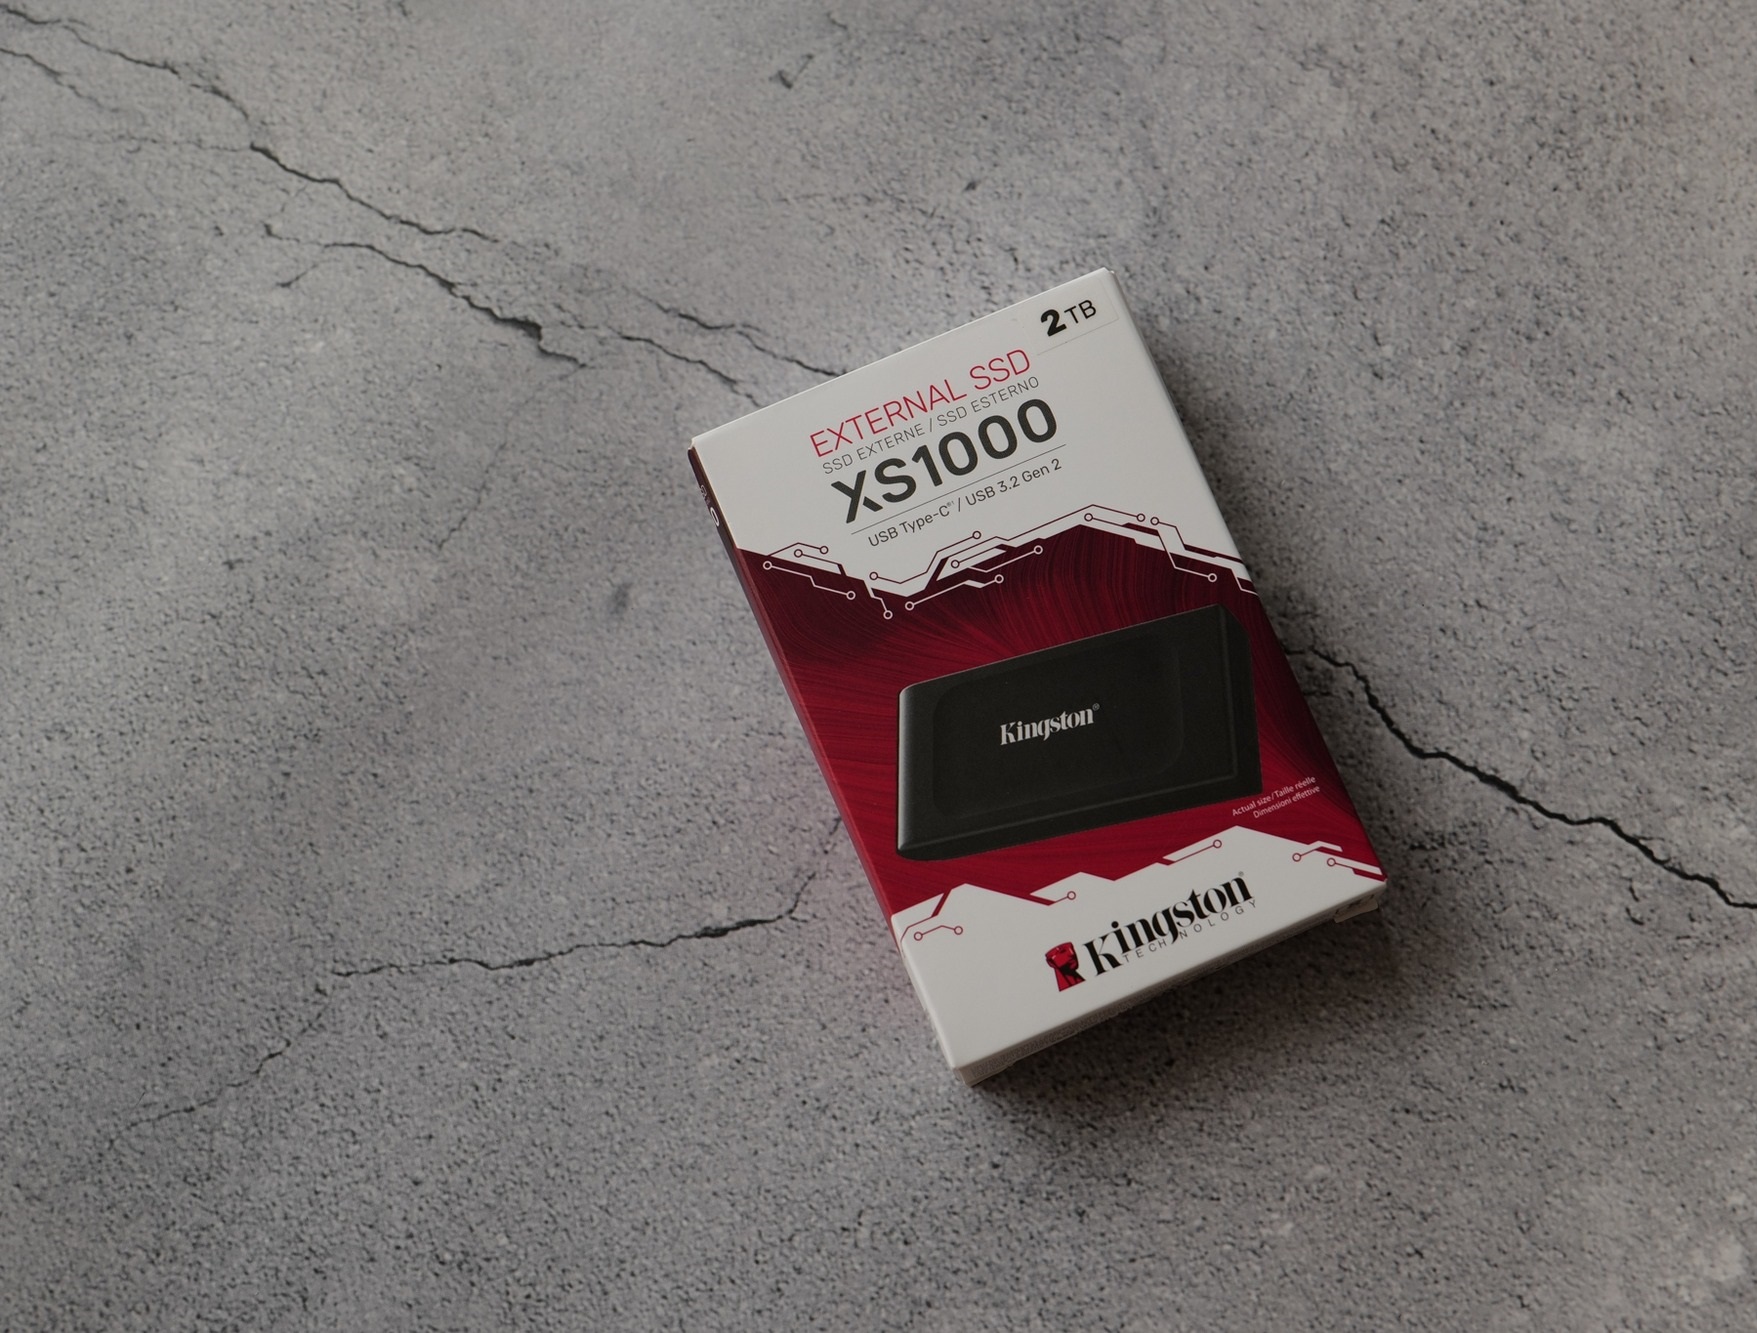 Đánh giá ổ cứng SSD di động Kingston XS1000 2TB: Lưu trữ cả thế giới trong lòng bàn tay